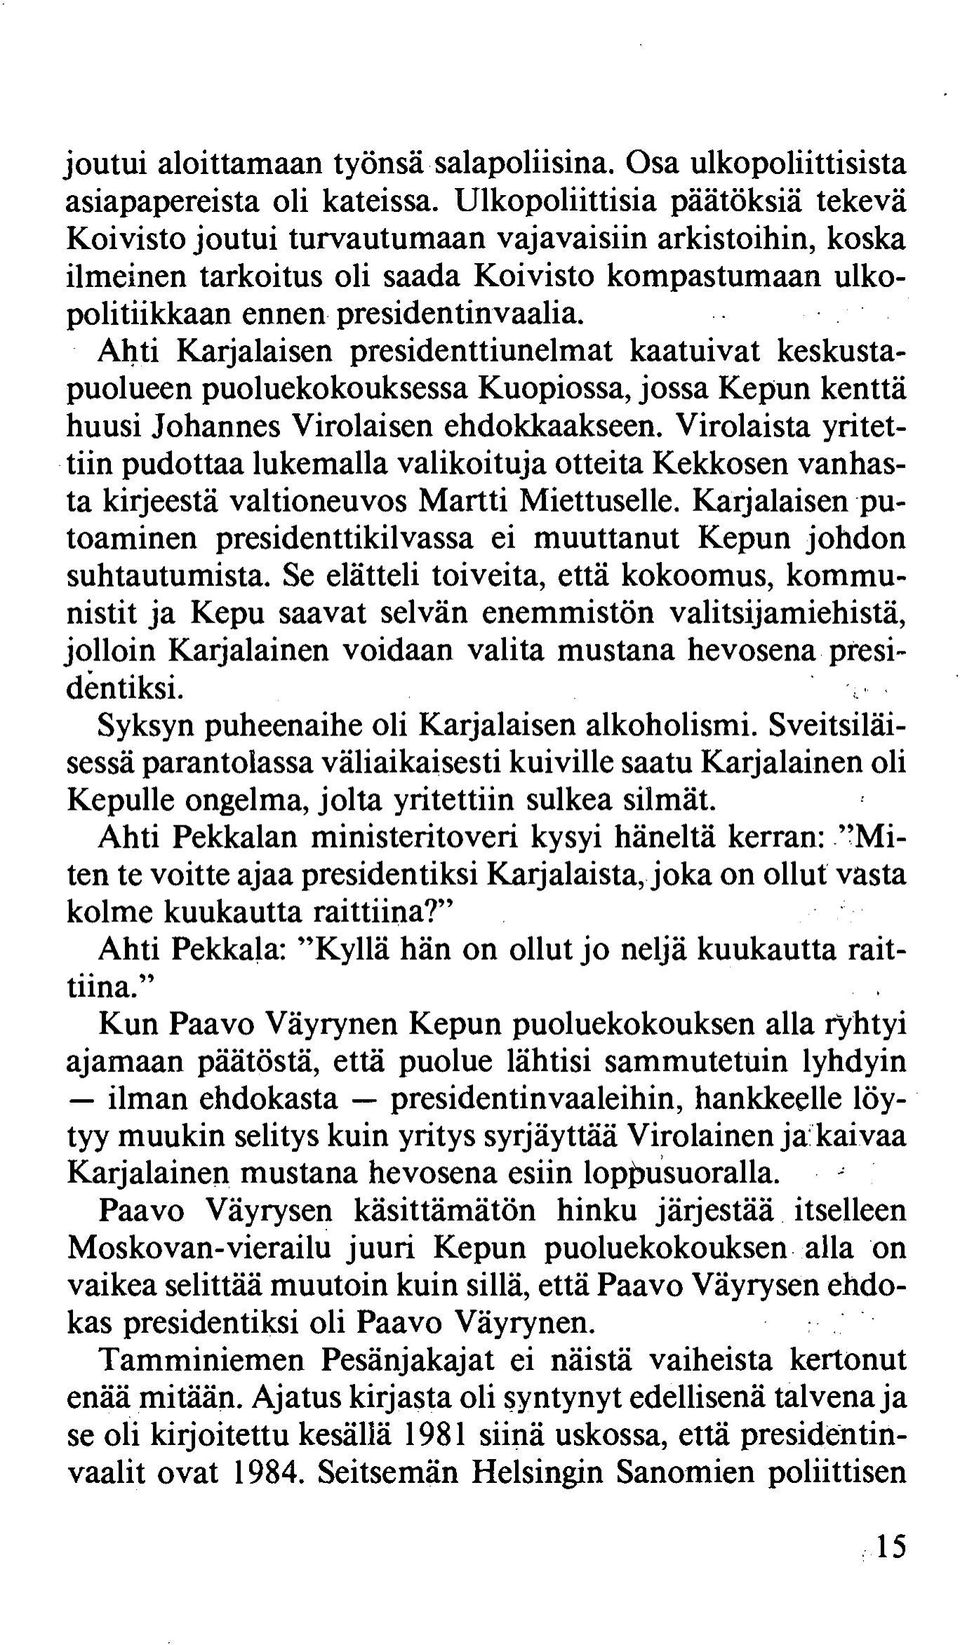 Ahti Karjalaisen presidenttiunelmat kaatuivat keskustapuolueen puoluekokouksessa Kuopiossa, jossa Kepun kenttä huusi Johannes Virolaisen ehdokkaakseen.